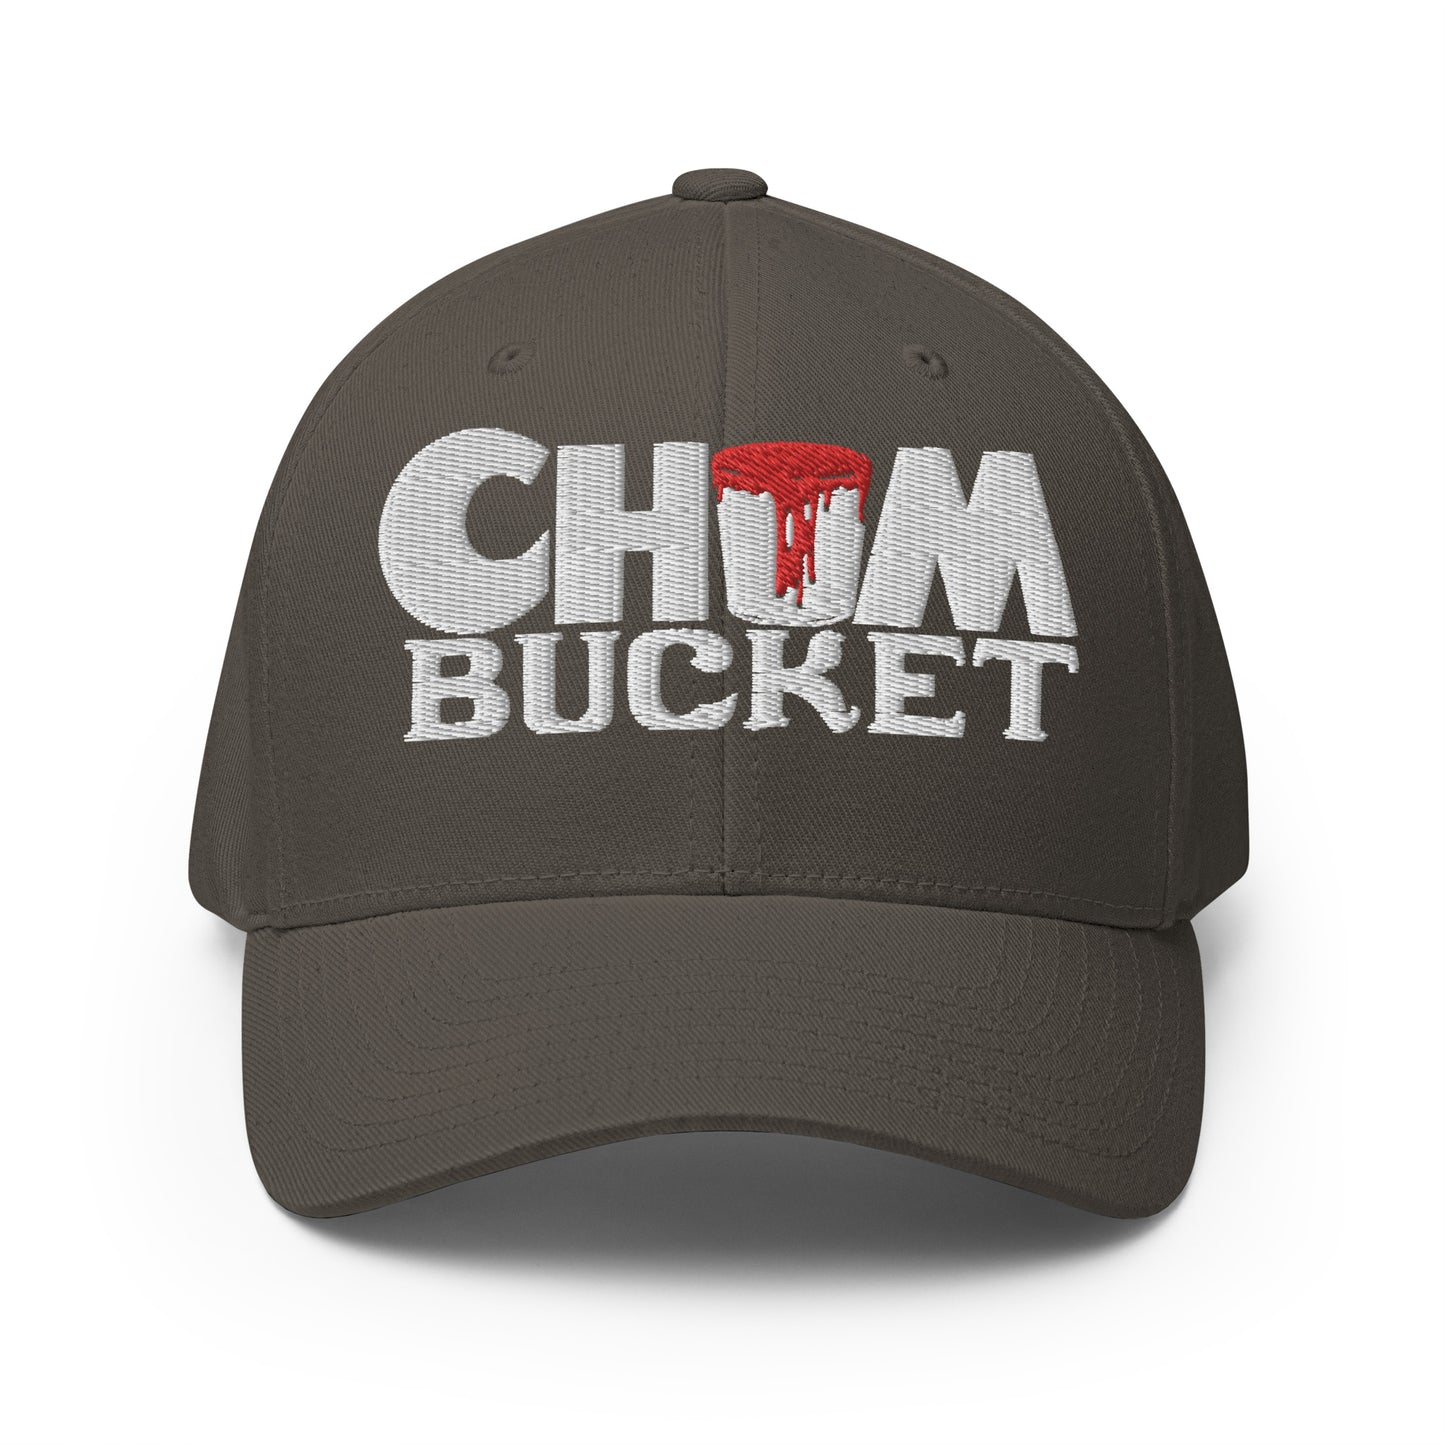 Chum Bucket Flexfit Baseball Cap